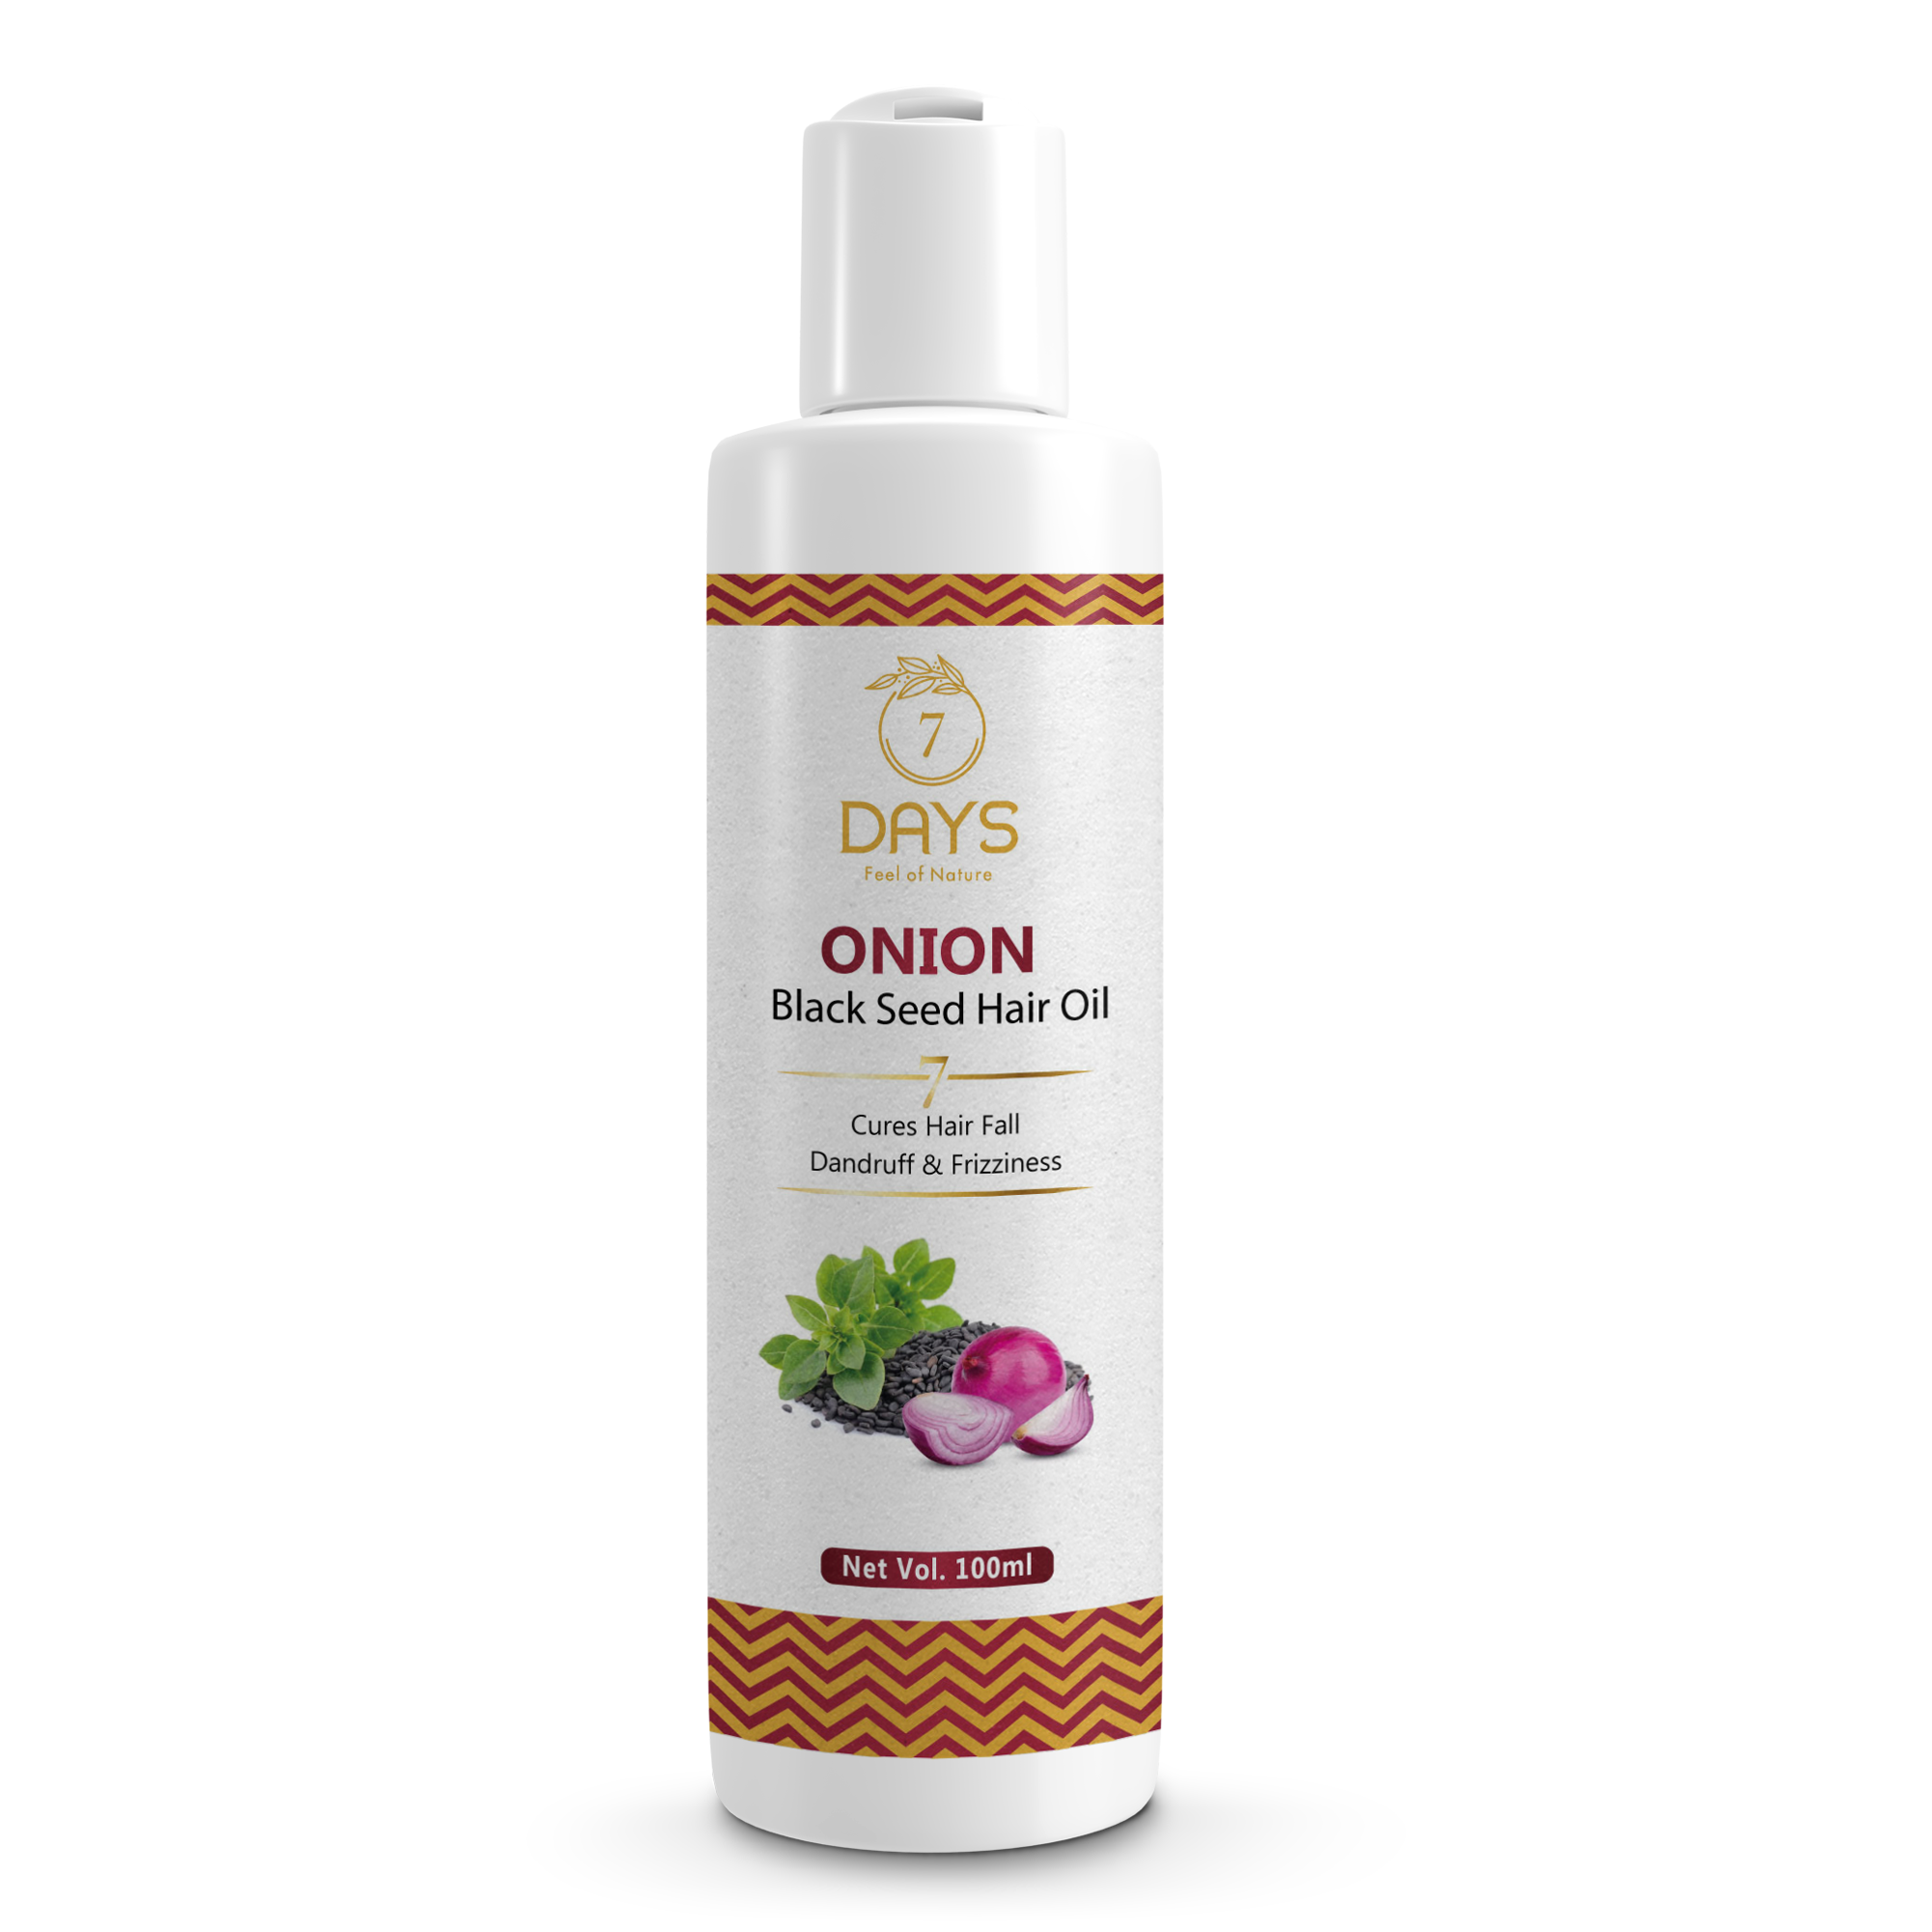 Red Onion Hair Oil Controls Hair Fall (120 ml) – 7 Days Organic